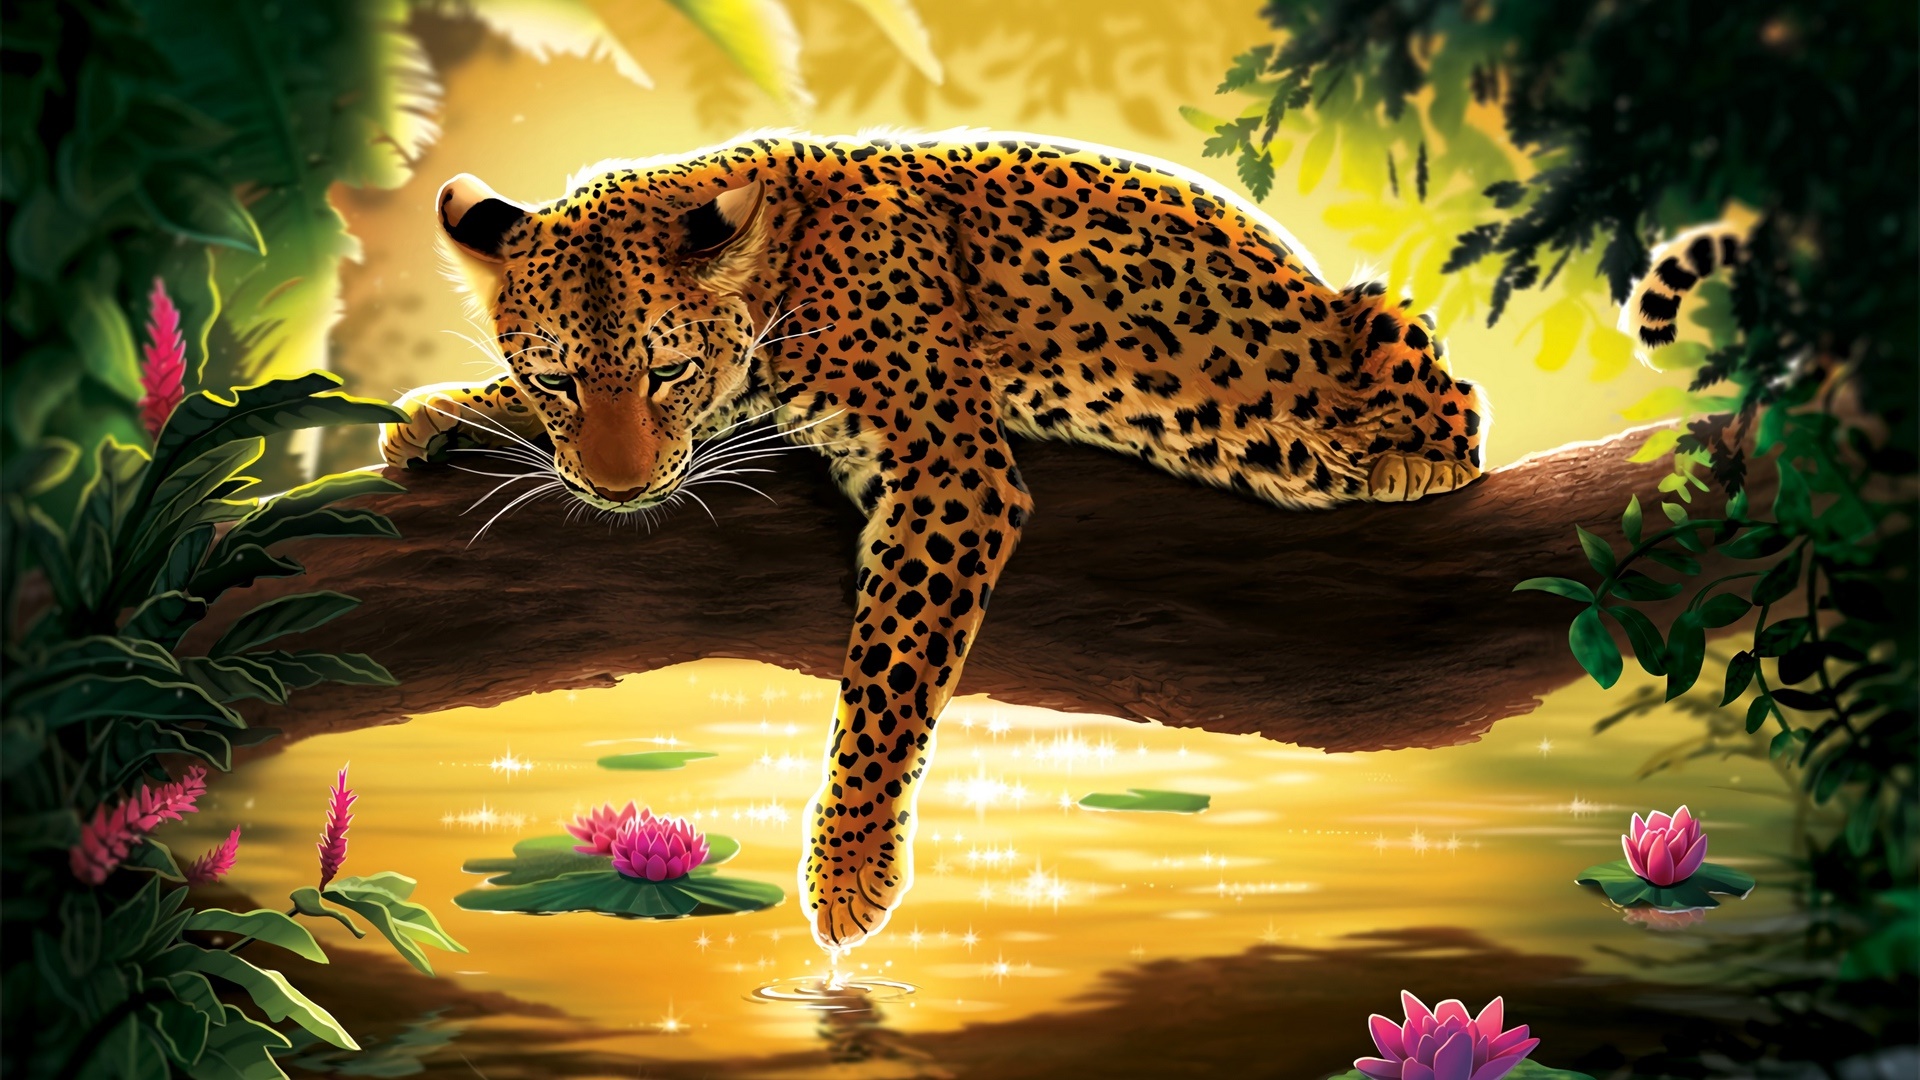 Sad Leopard by Atropicus